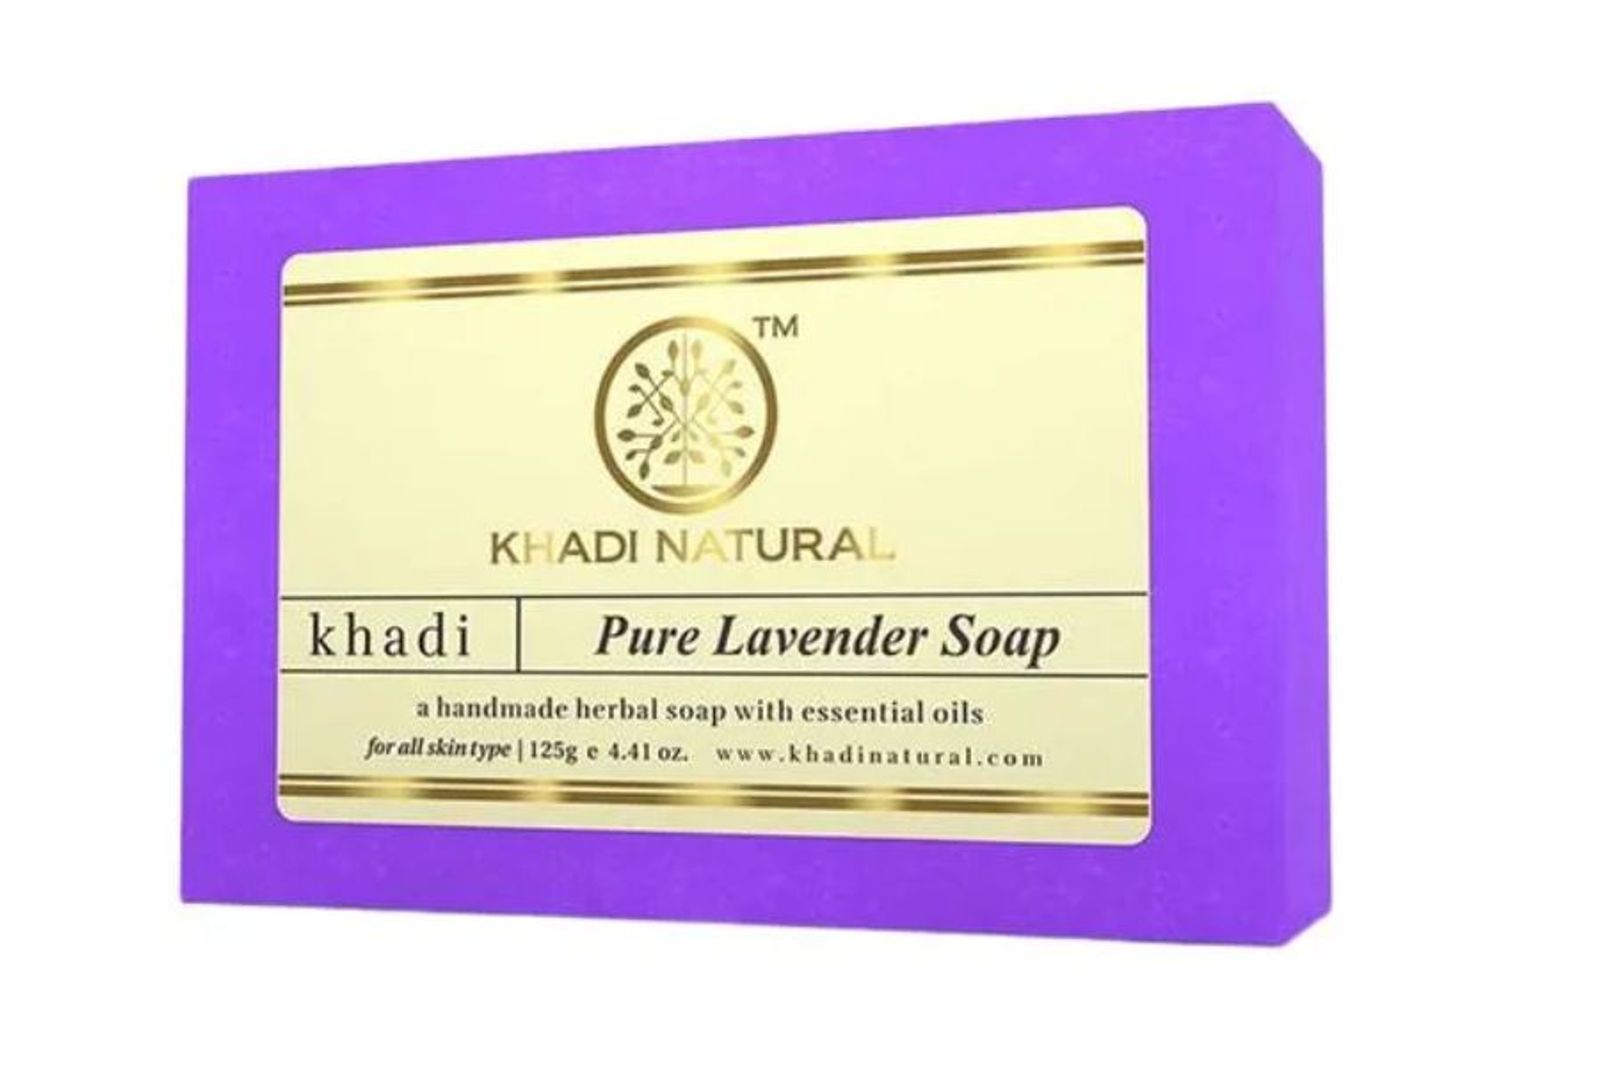 Khadi Natural Herbal Pure Lavender Soap